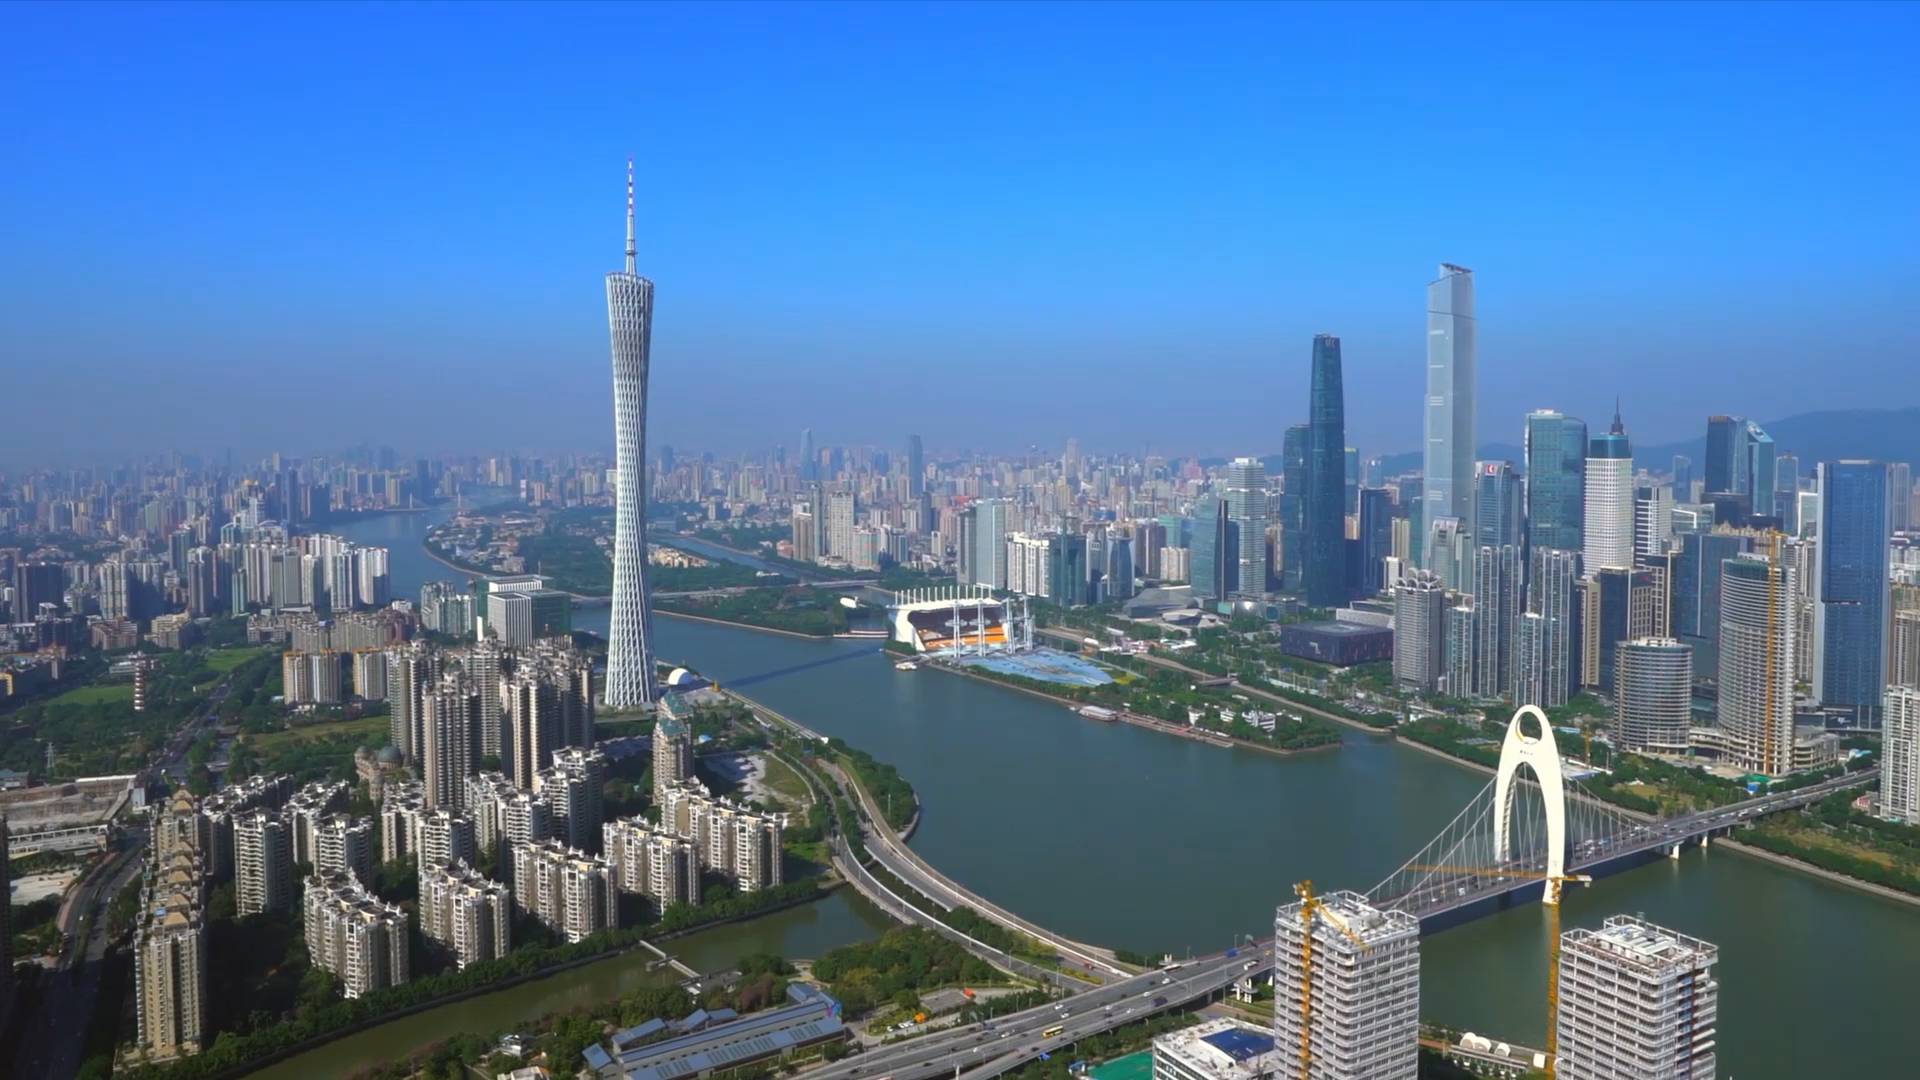 《新华视点》(改革开放40年城市样本)广州:持续奏响的市场强音